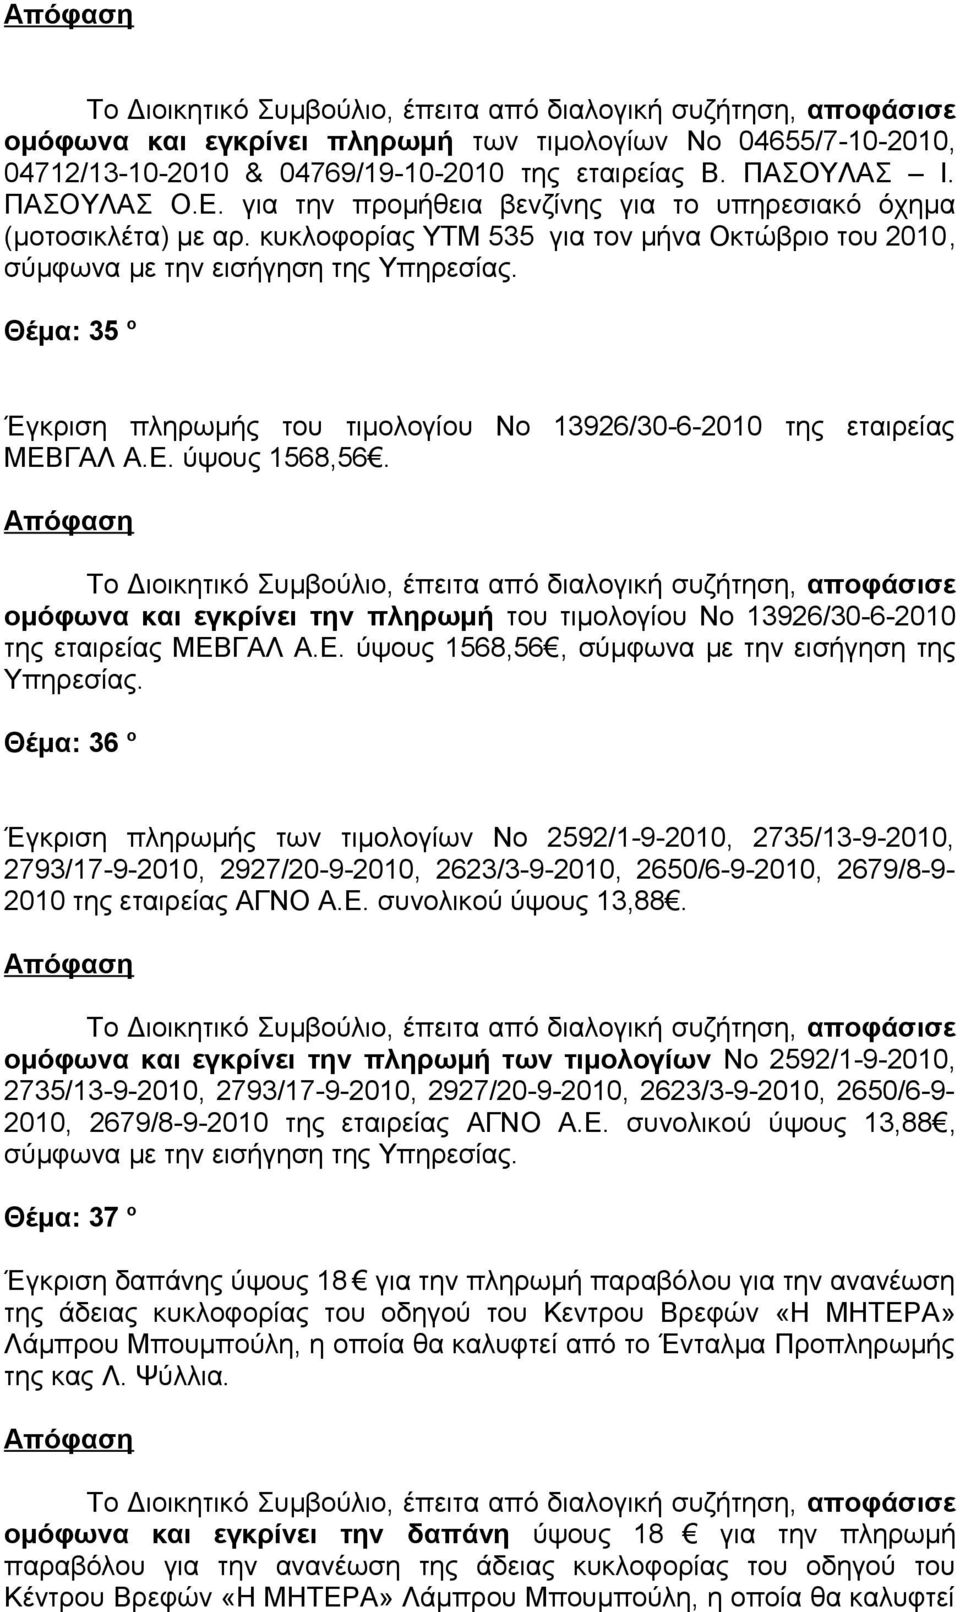 κυκλοφορίας ΥΤΜ 535 για τον μήνα Οκτώβριο του 2010, σύμφωνα με την εισήγηση της Θέμα: 35 ο Έγκριση πληρωμής του τιμολογίου Νο 13926/30-6-2010 της εταιρείας ΜΕΒΓΑΛ Α.Ε. ύψους 1568,56.